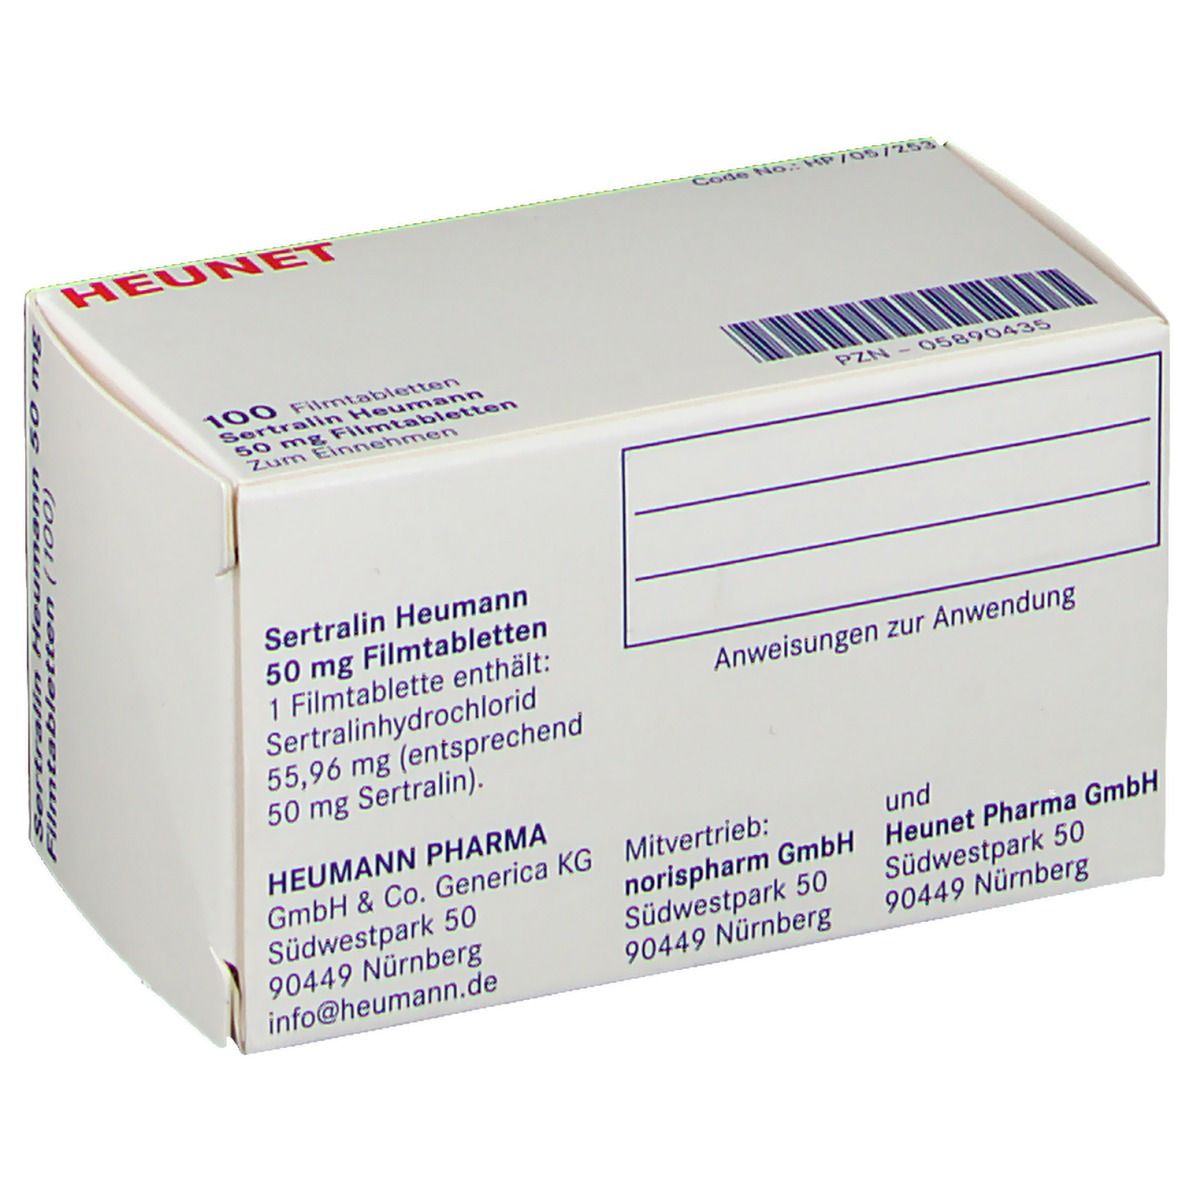 Sertralin Heumann 50 mg